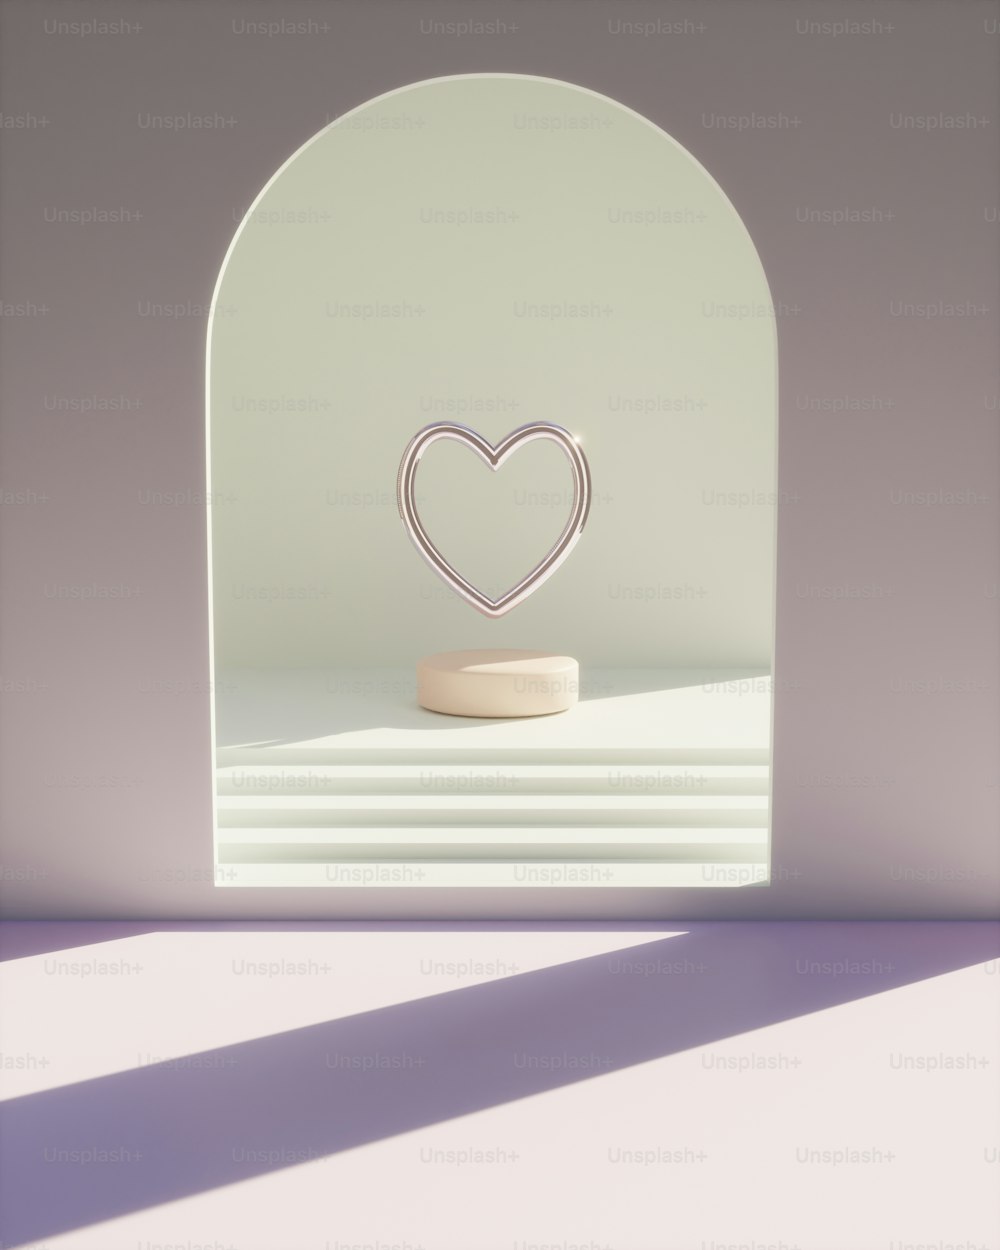 un objet en forme de cœur assis sur une table